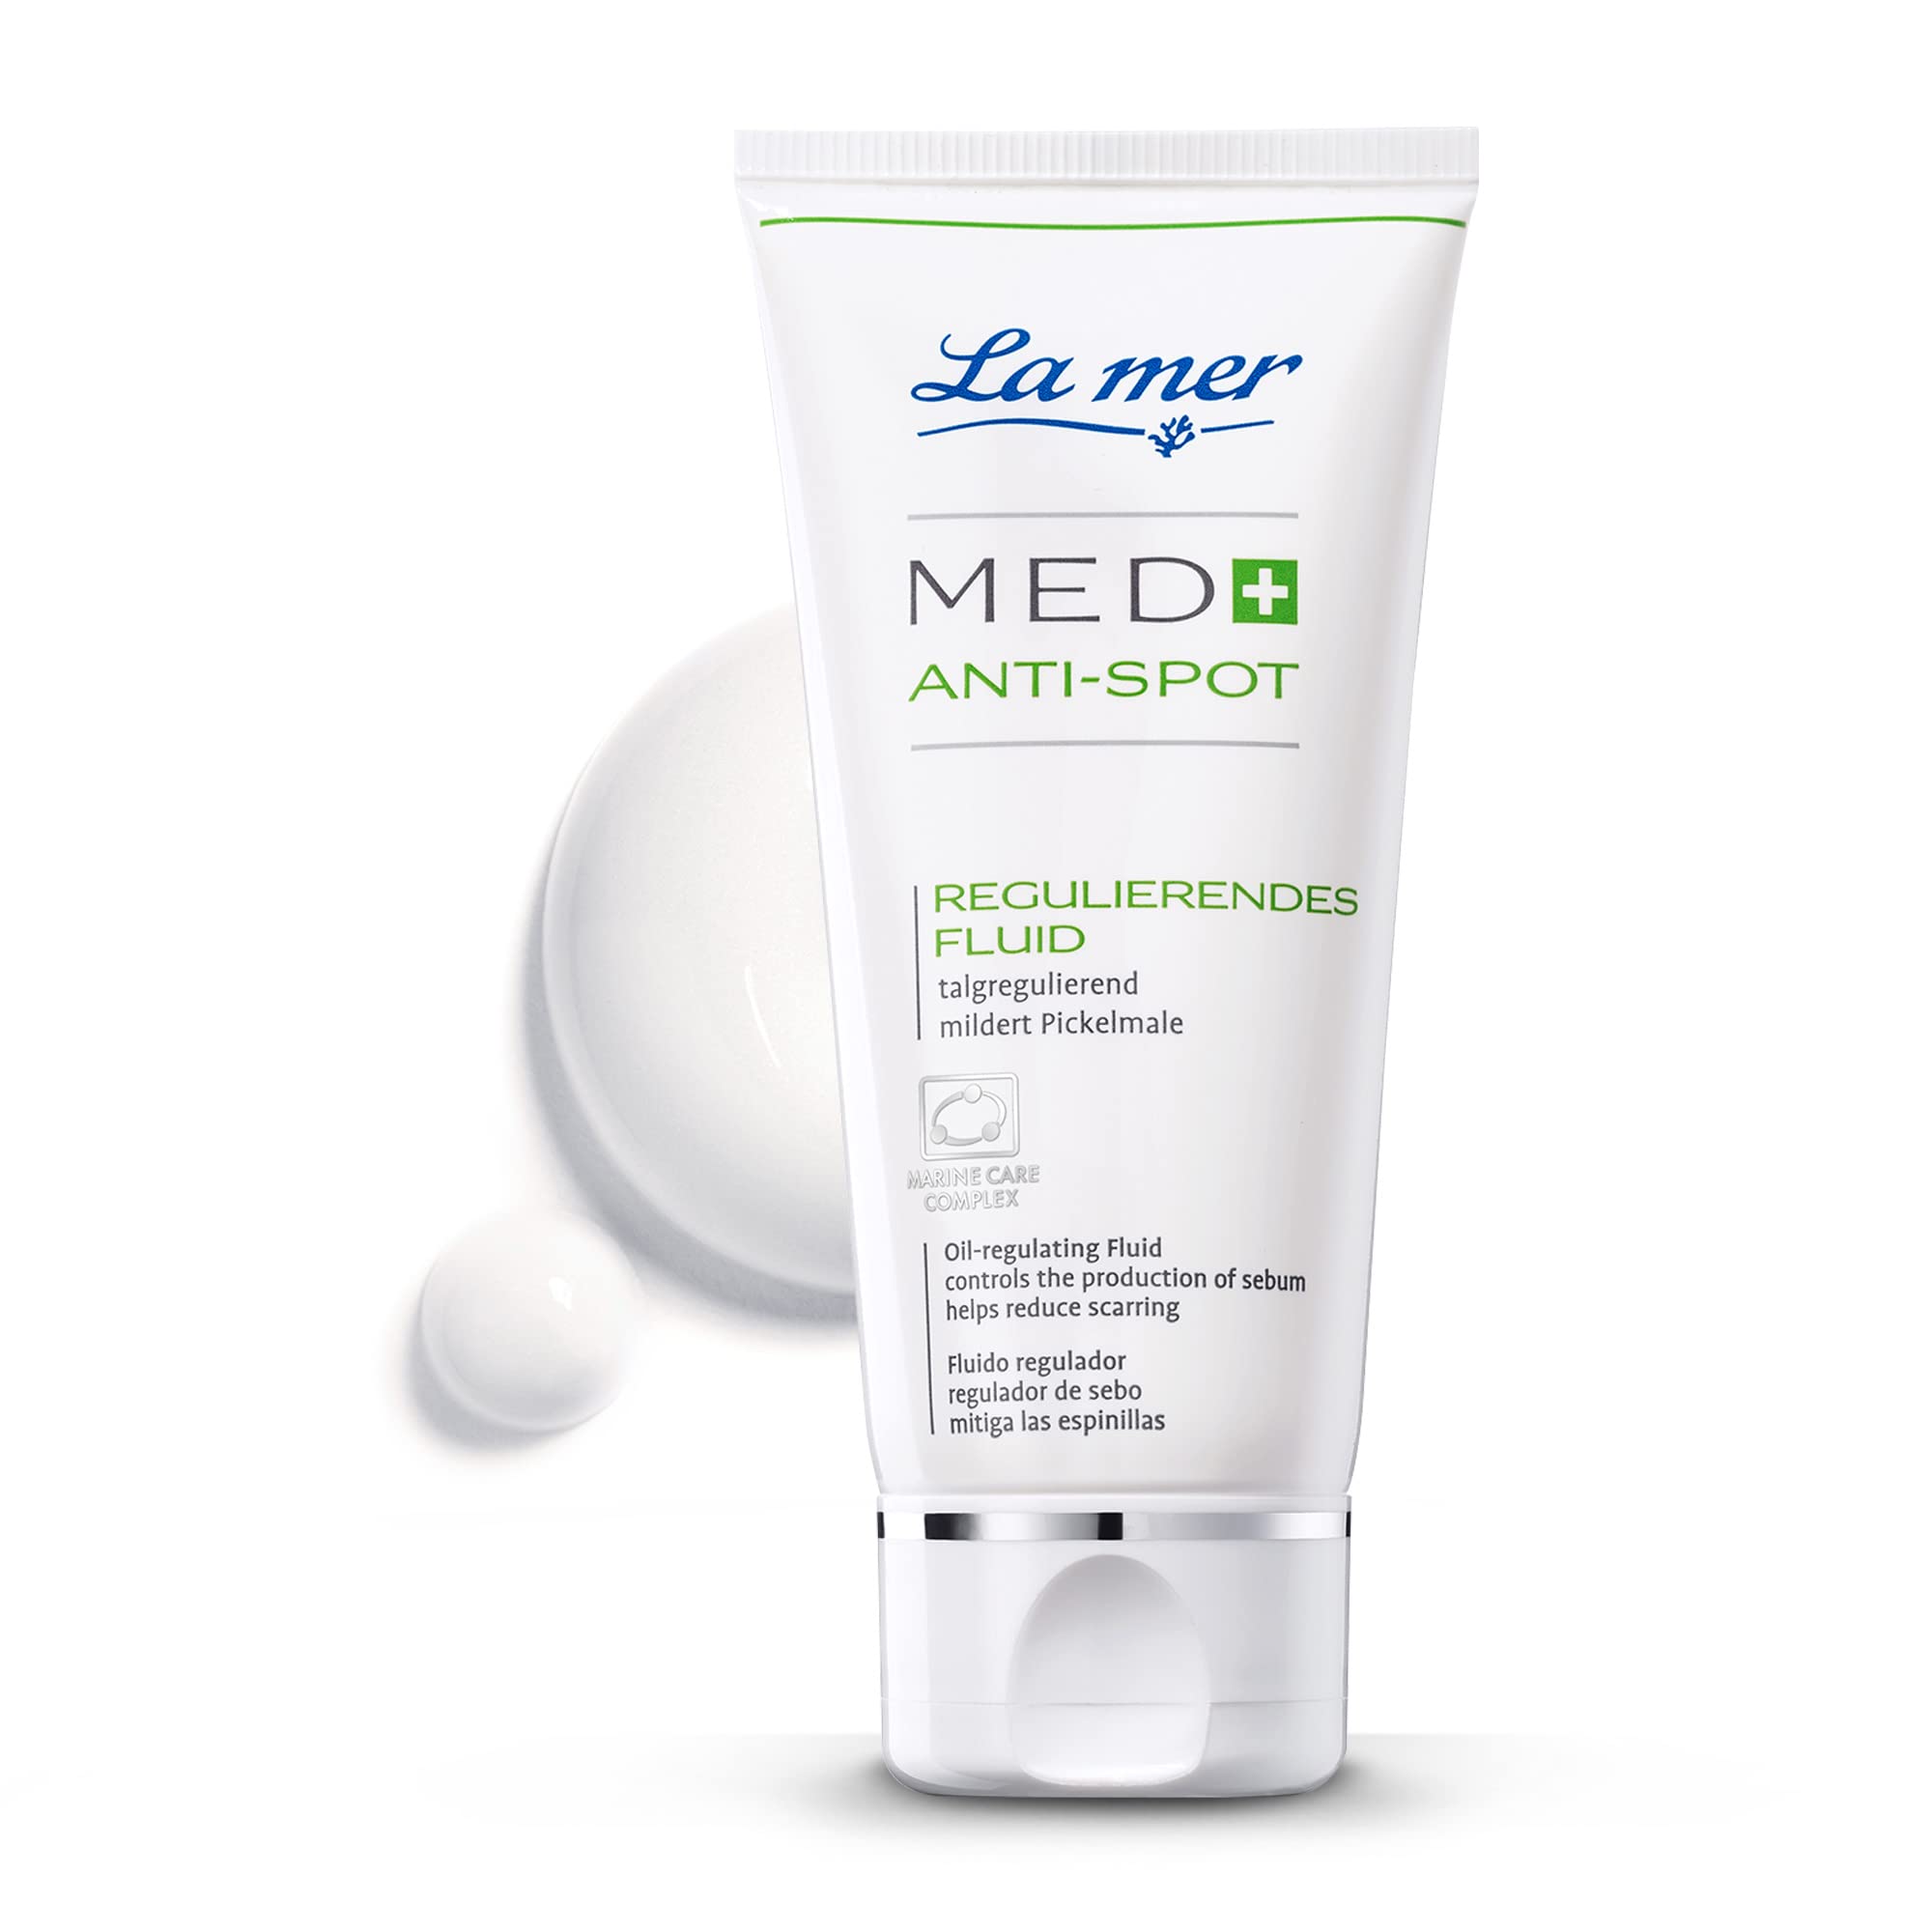 La mer MED+ Anti-Spot Regulierendes Fluid - Leichtes, regulierendes Gesichtspflege - Reduziert Pickel & Mitesser - Mildert Pickelmale - Talgregulierende - Porenverfeinernd und antibakteriell - 50 ml